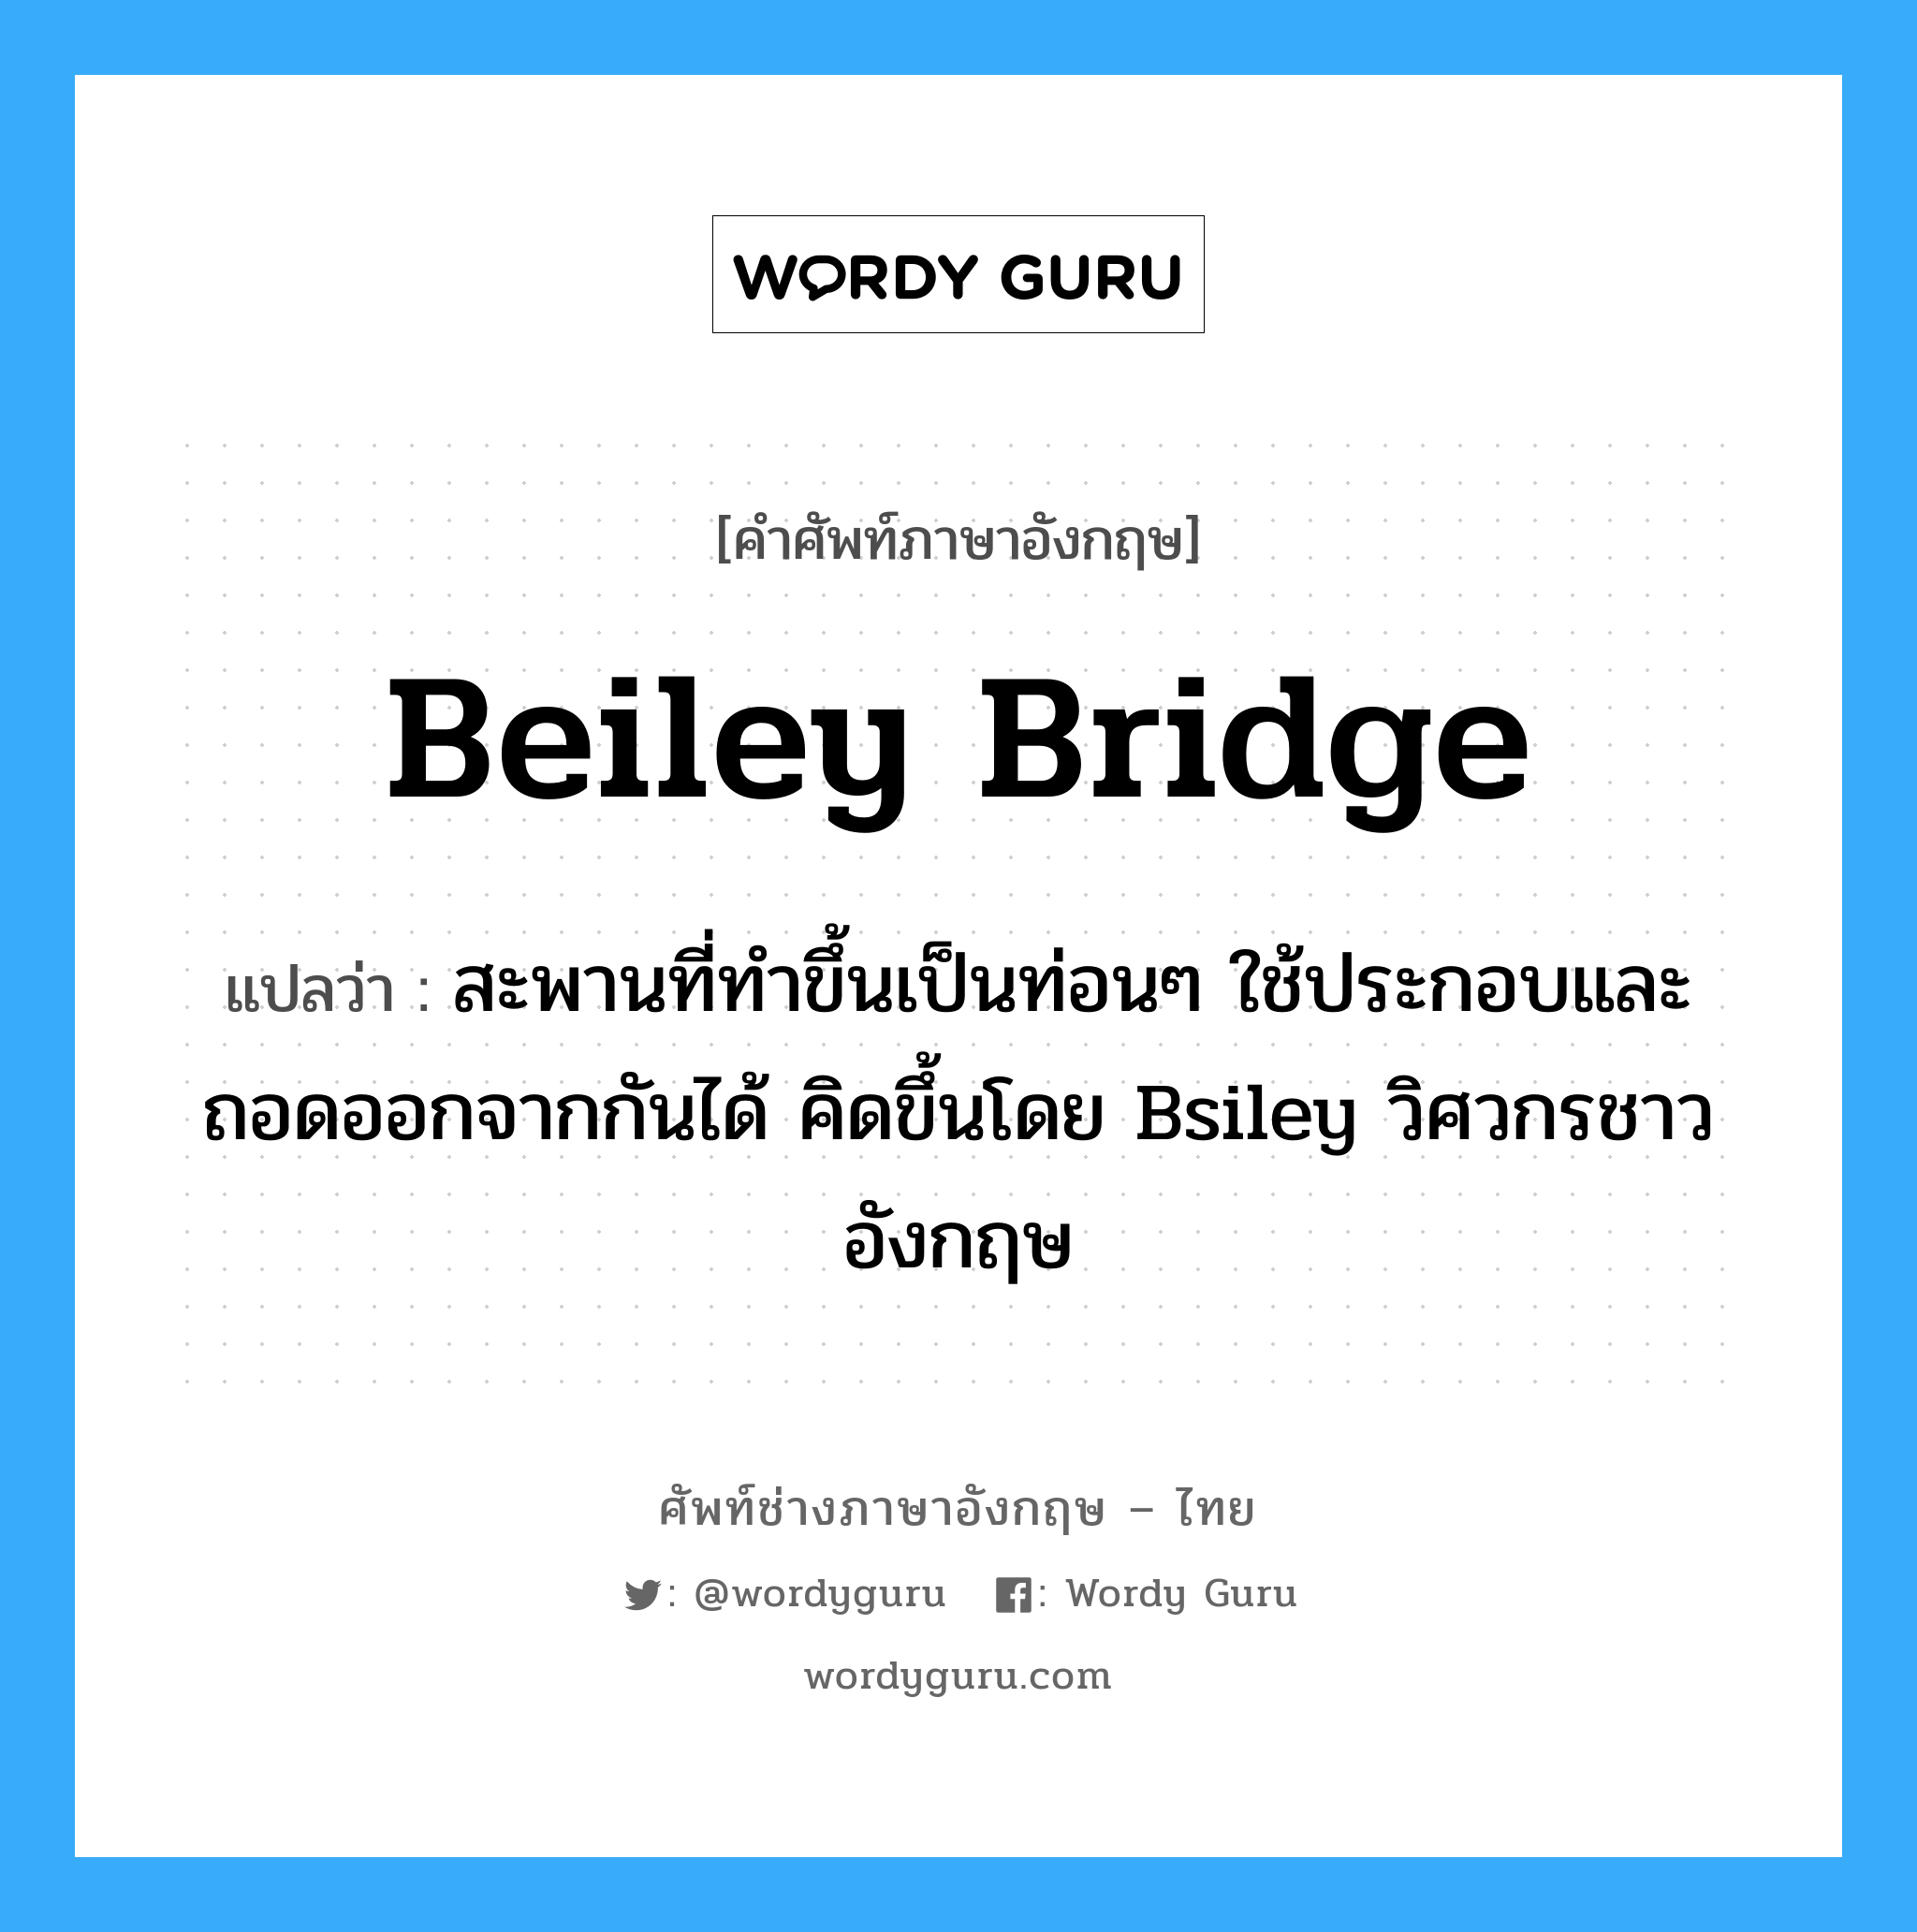 Beiley Bridge แปลว่า?, คำศัพท์ช่างภาษาอังกฤษ - ไทย Beiley Bridge คำศัพท์ภาษาอังกฤษ Beiley Bridge แปลว่า สะพานที่ทำขึ้นเป็นท่อนๆ ใช้ประกอบและถอดออกจากกันได้ คิดขึ้นโดย Bsiley วิศวกรชาวอังกฤษ